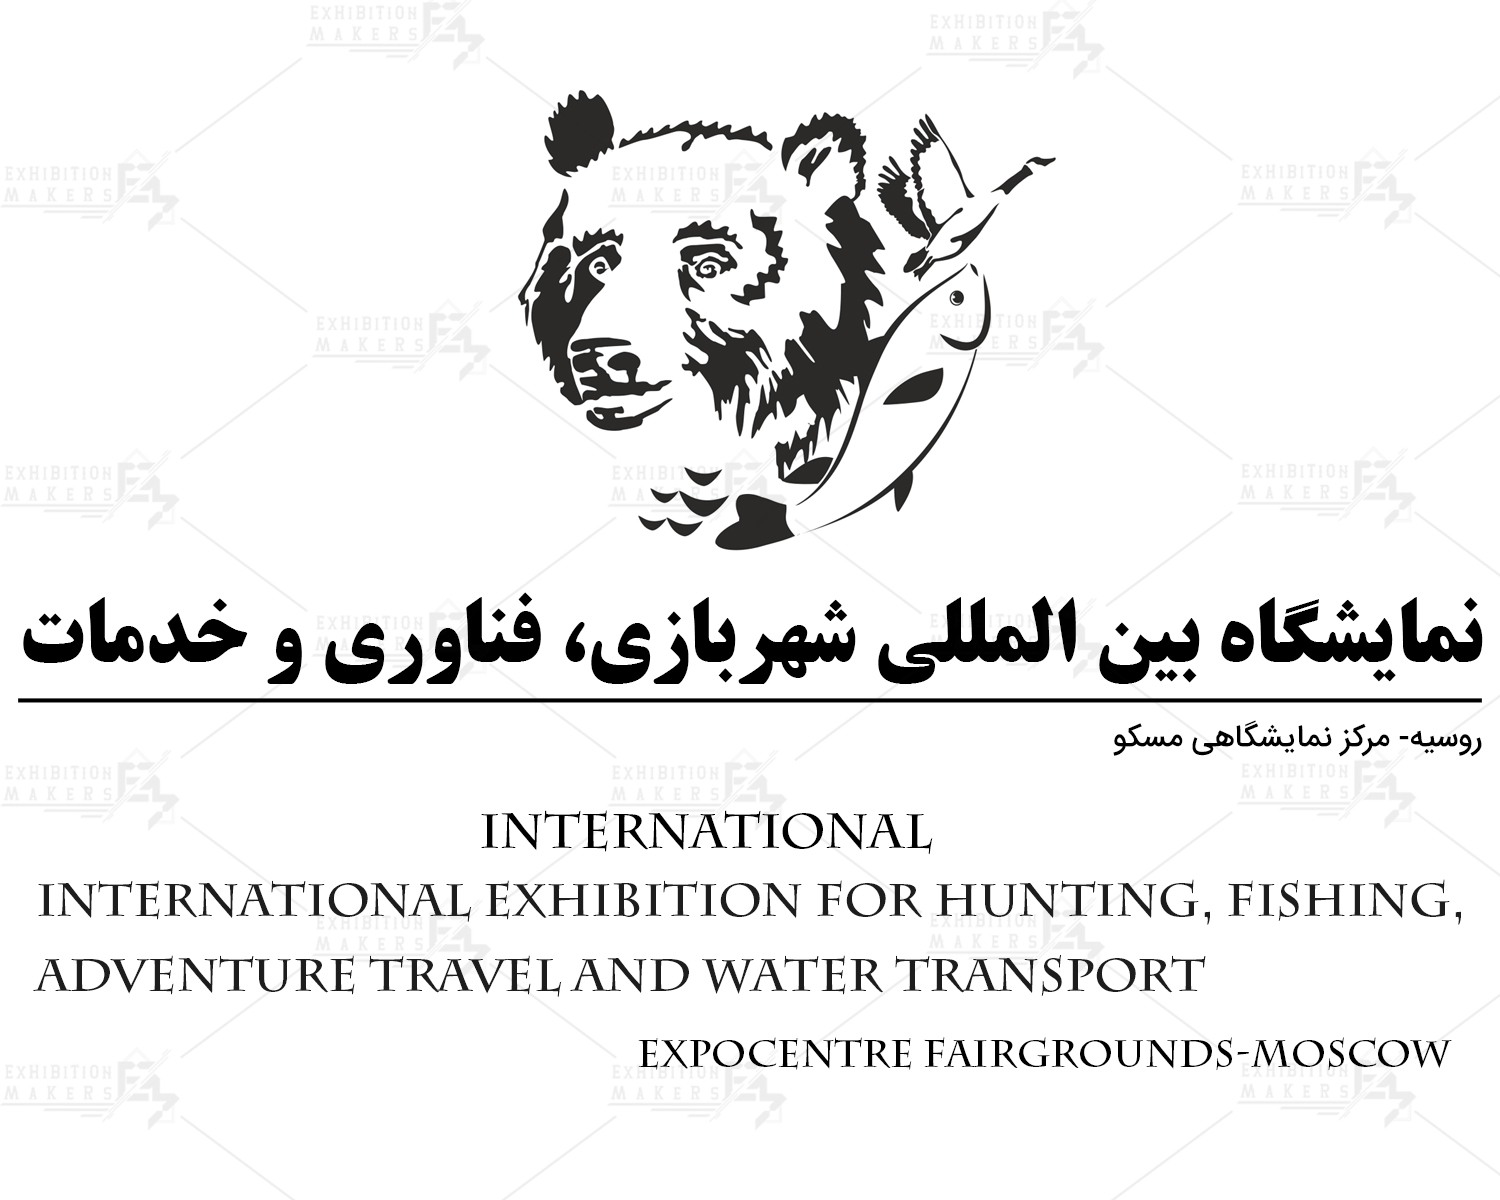 نمایشگاه بین المللی شکار، ماهیگیری، ماجراجویی و حمل و نقل آبی روسیه مسکو